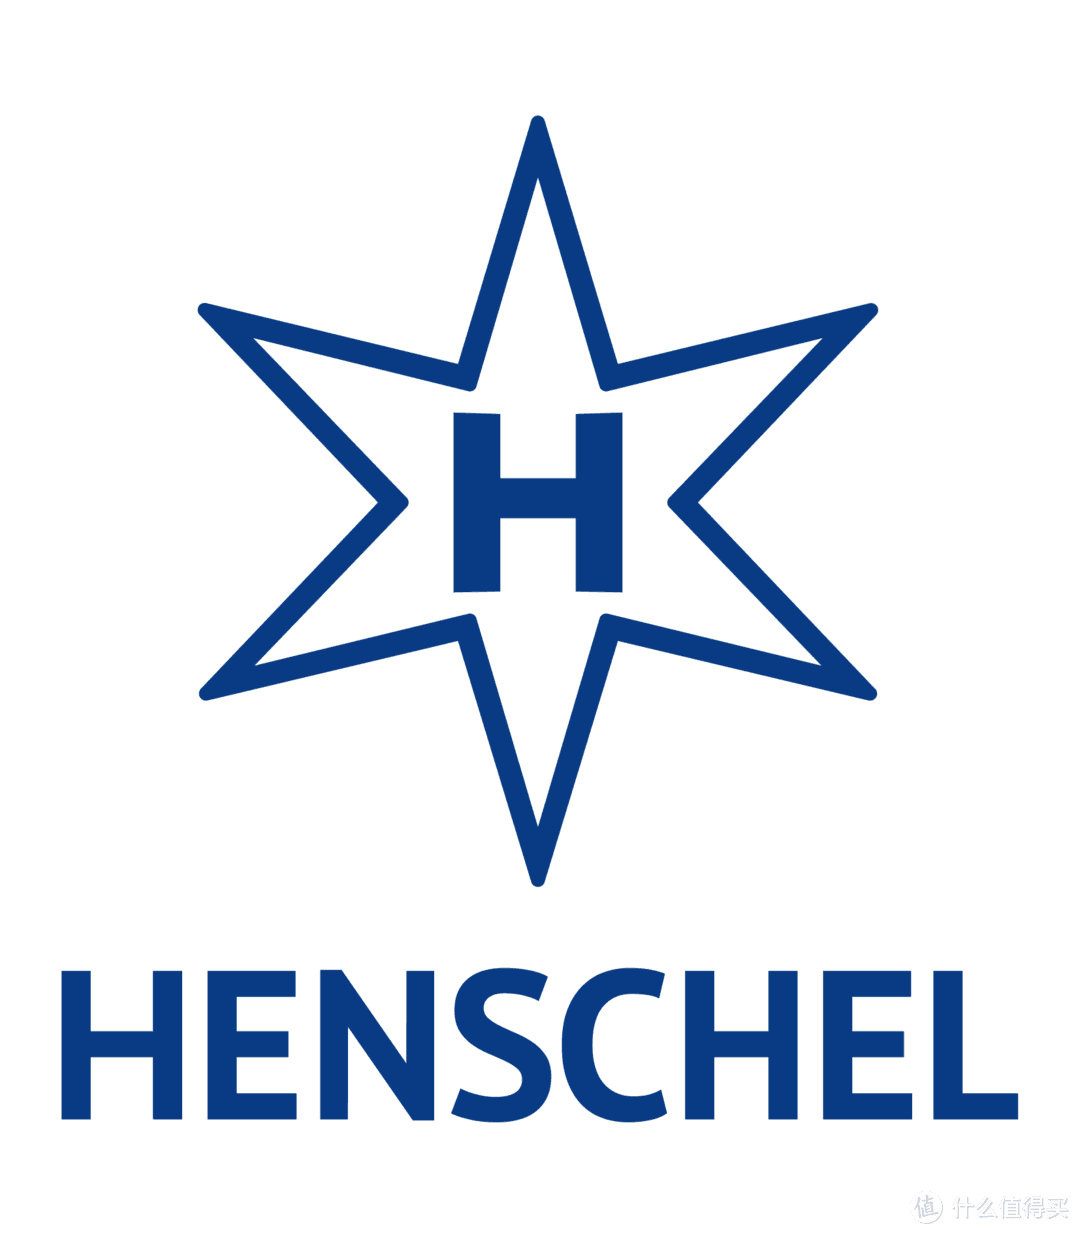 亨舍尔公司(Henschel und Sohn)，1810年成立于德国黑森州卡塞尔市，是德国铁路发展的奠基人，也是20世纪上半叶德国最重要的铁路机械及武器制造商。其产品除铁路机车和车辆外，还包括各种军用车辆和飞行器。战后，亨舍尔公司恢复铁路机械生产的主营业务，先后与莱茵金属、蒂森、ABB等公司合并，并于2002年成为庞巴迪下属子公司，其卡塞尔工厂仍为现今世界上最大的机车生产企业之一。